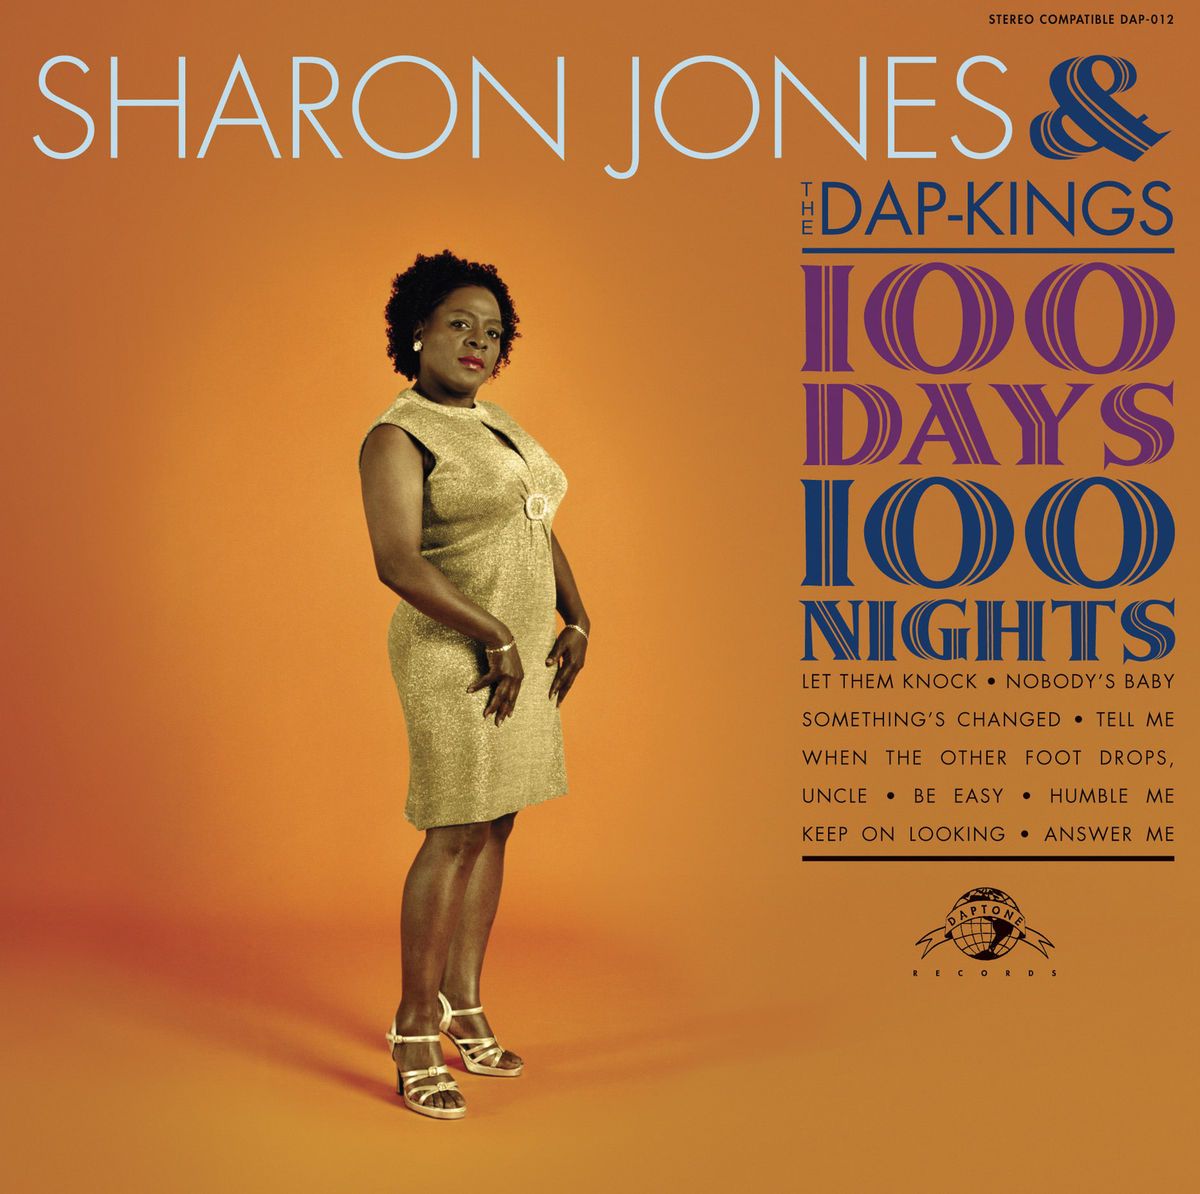 Sharon Jones The DAP Kings 100 Days 100 Nights LP Vinyl Indie SEALED